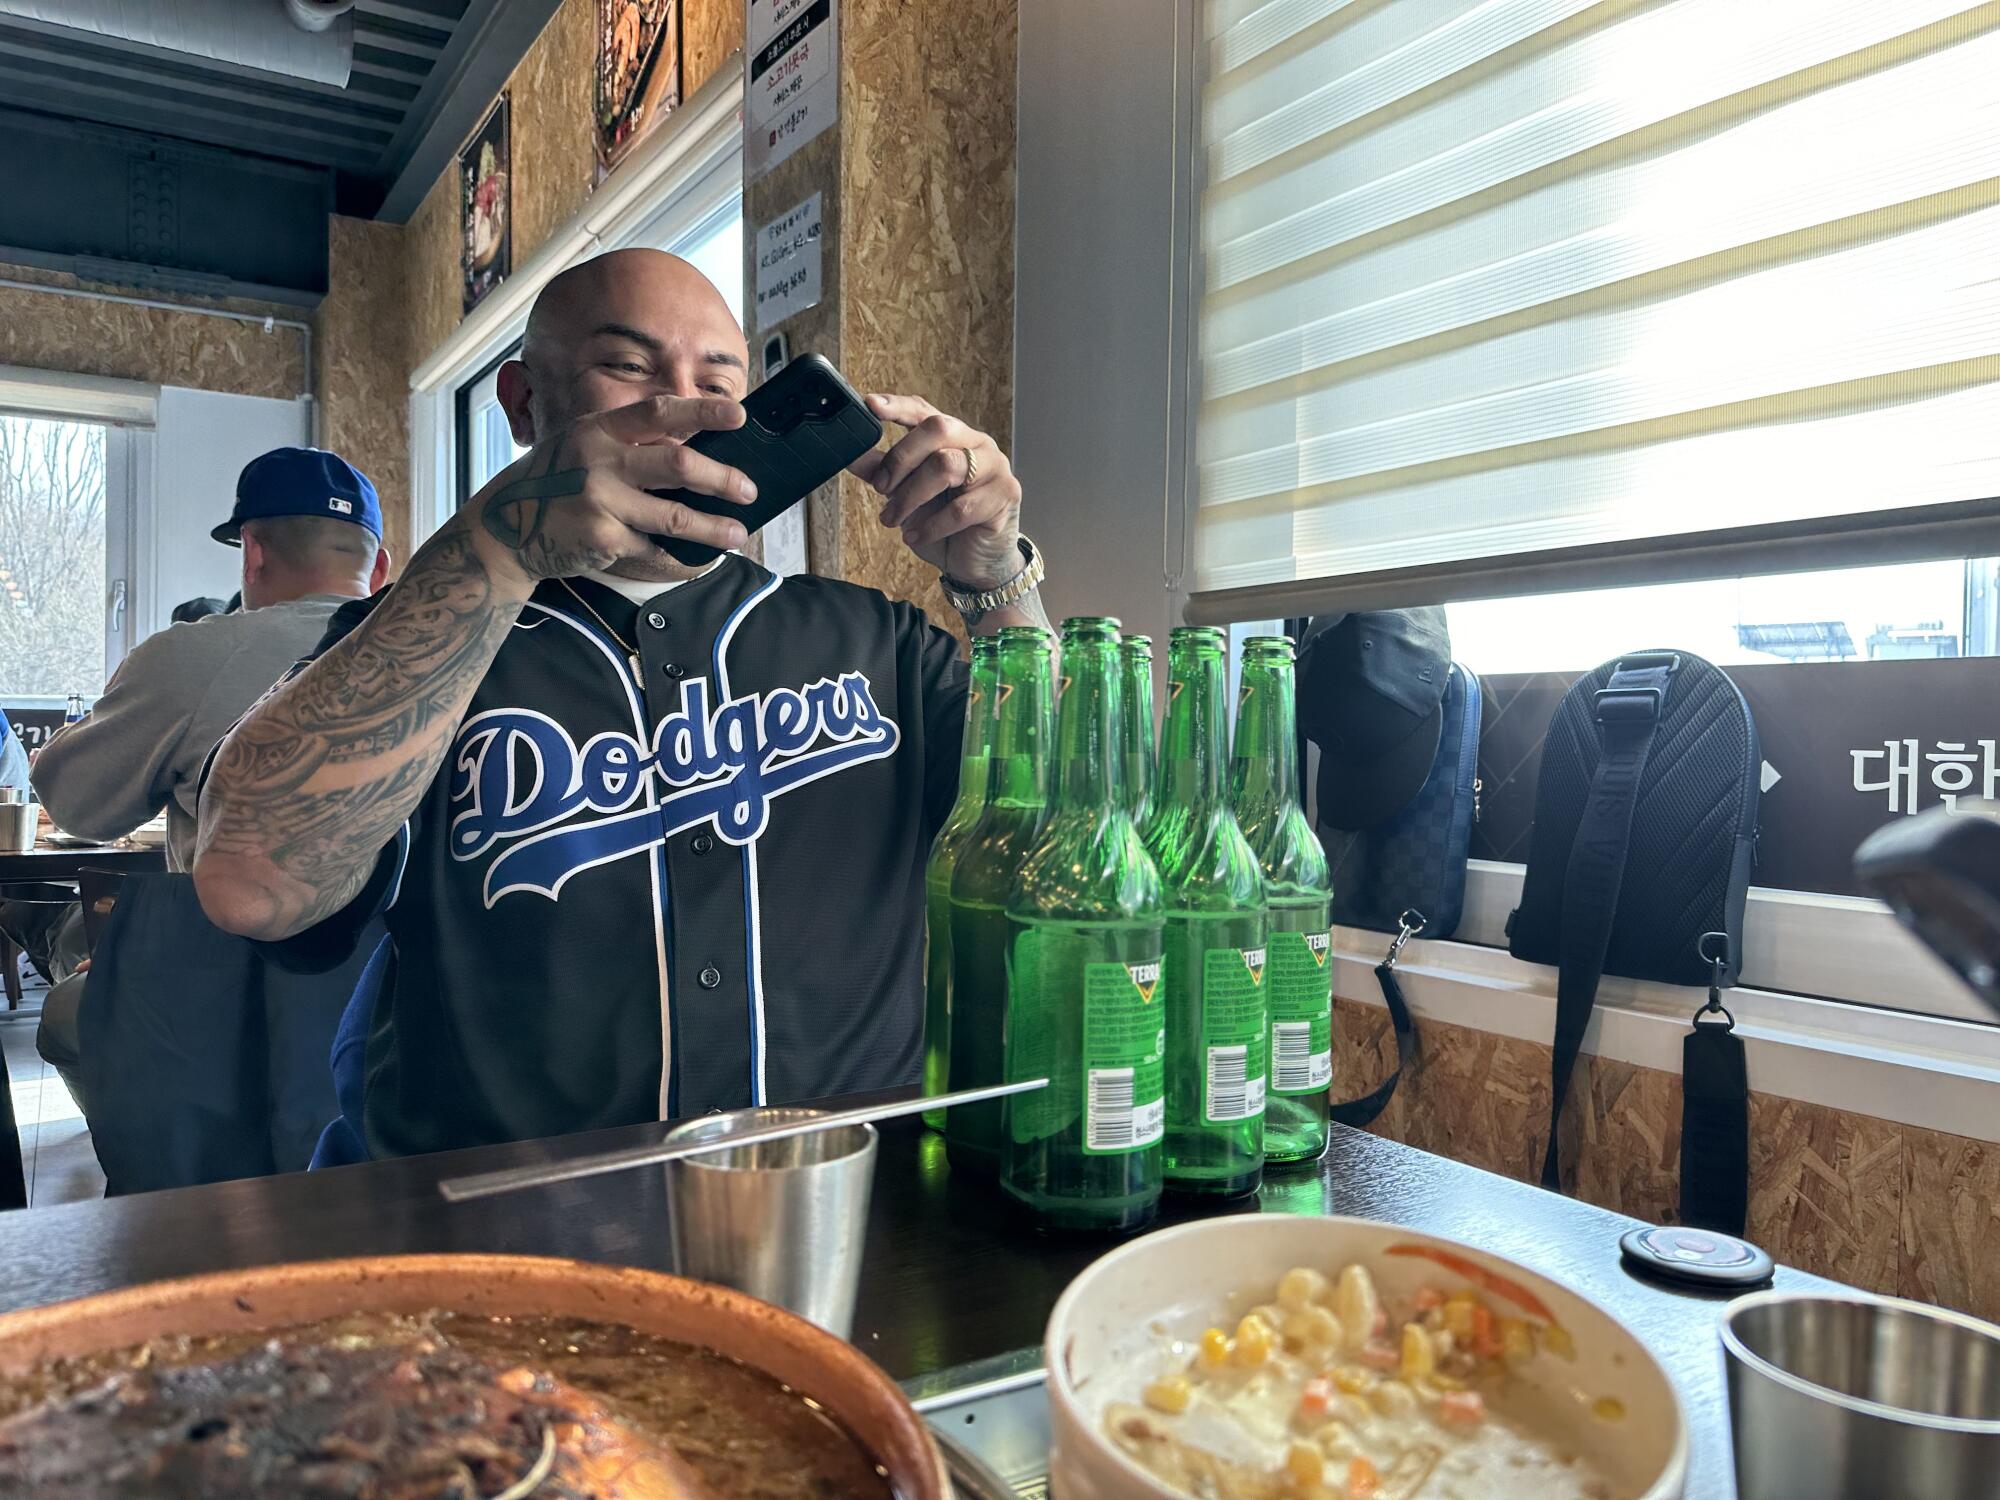 在非军事区吃完午饭后，一名道奇队球迷拍下了他和朋友喝的啤酒的照片。 